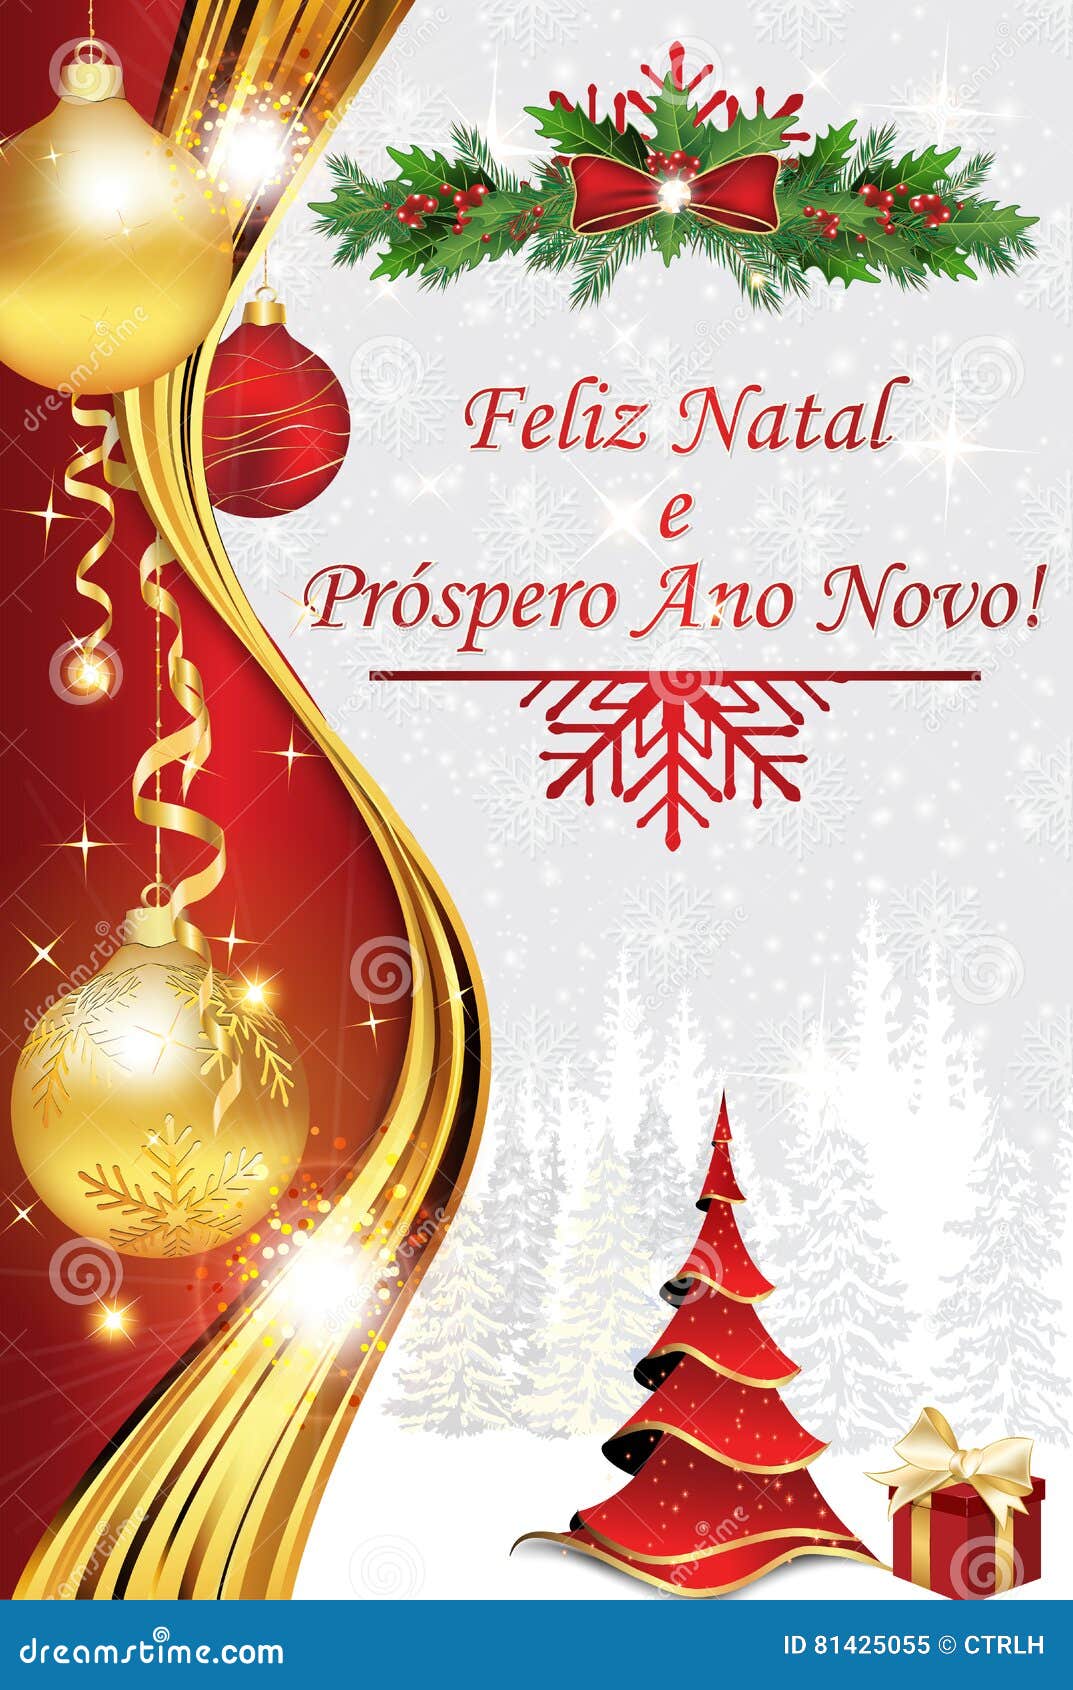 Feliz Natal Ano Novo Stock Illustrations – 30 Feliz Natal Ano Novo Stock  Illustrations, Vectors & Clipart - Dreamstime